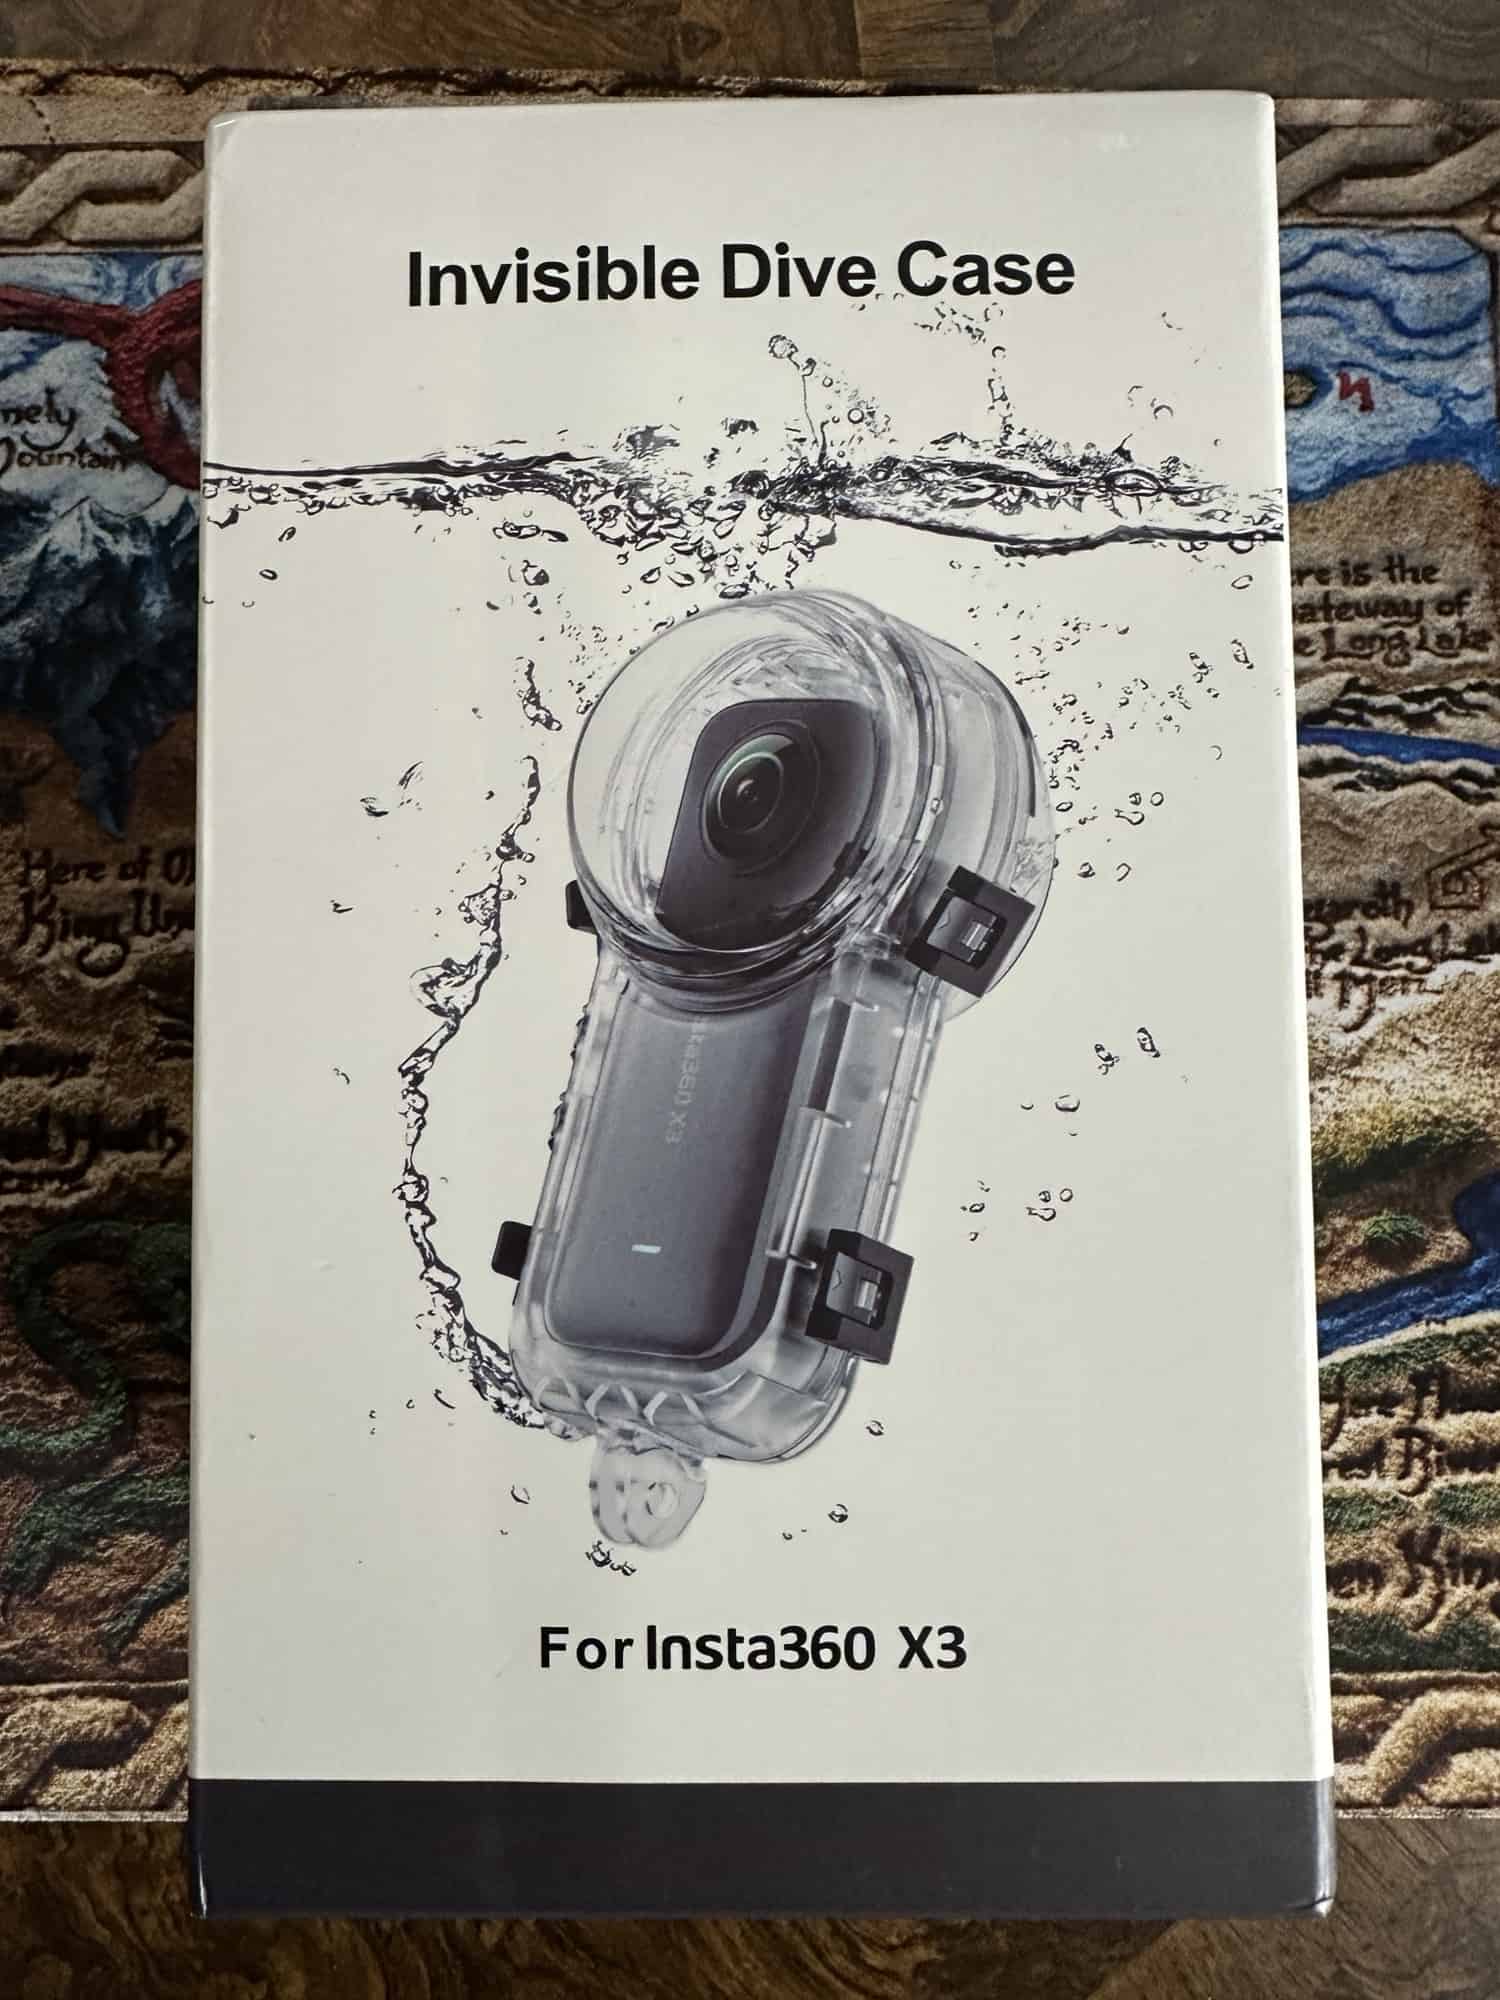 Insta360 X3 new dive case in box